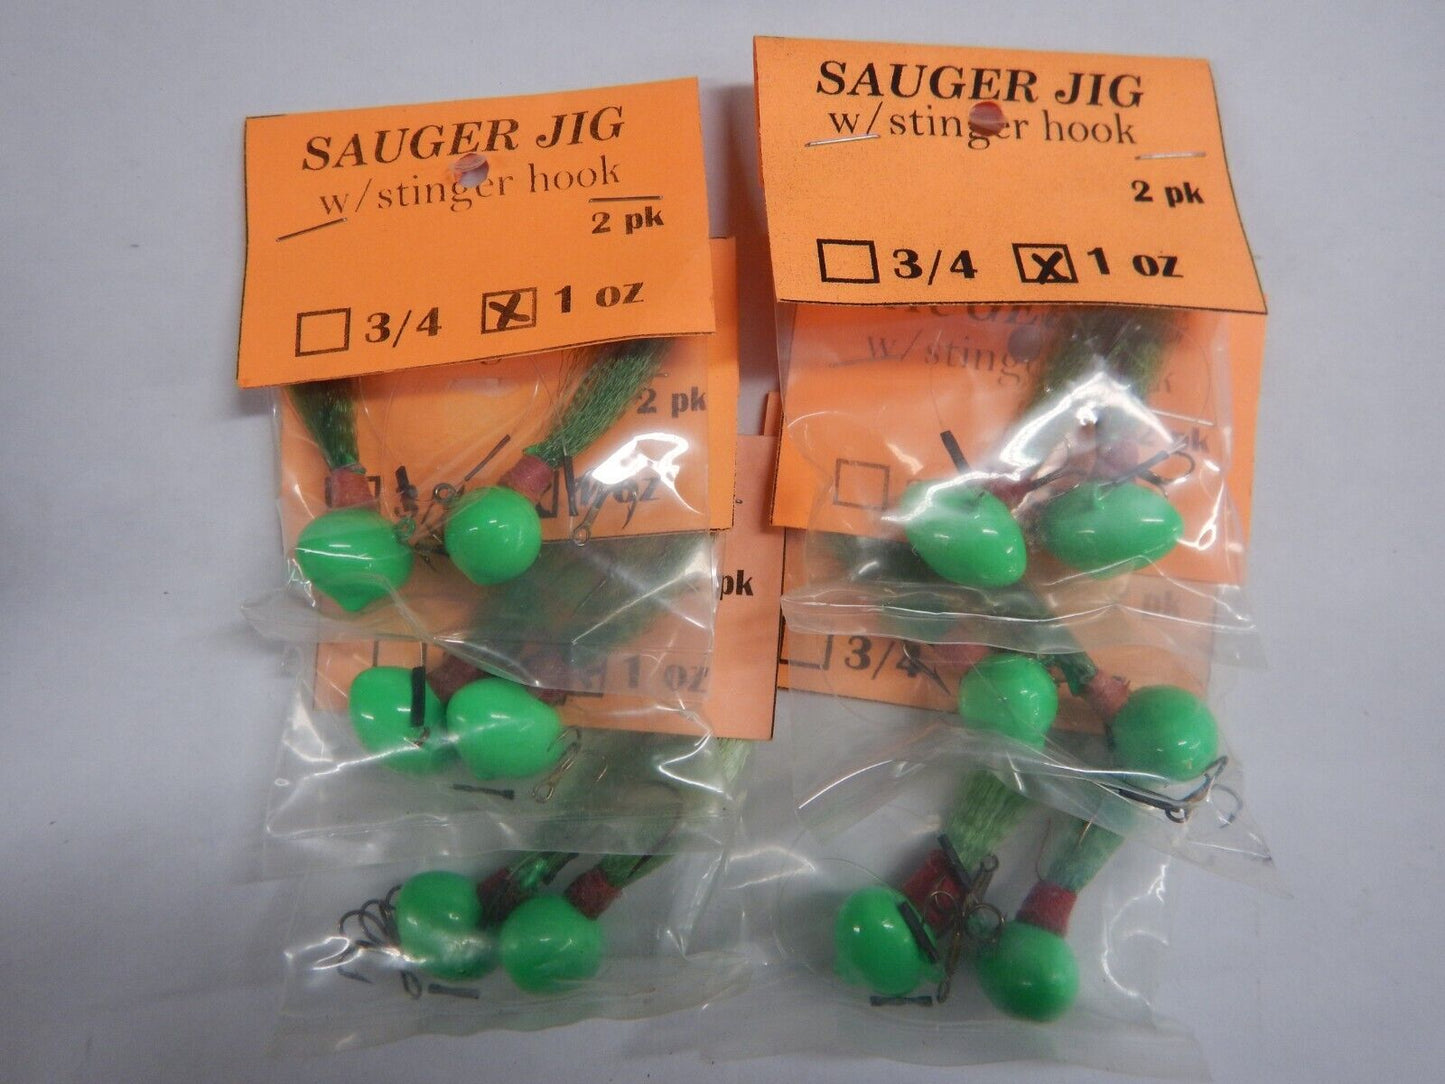 Sauger Jigs 1oz With Stinger Hook 1 dozen Choose Color